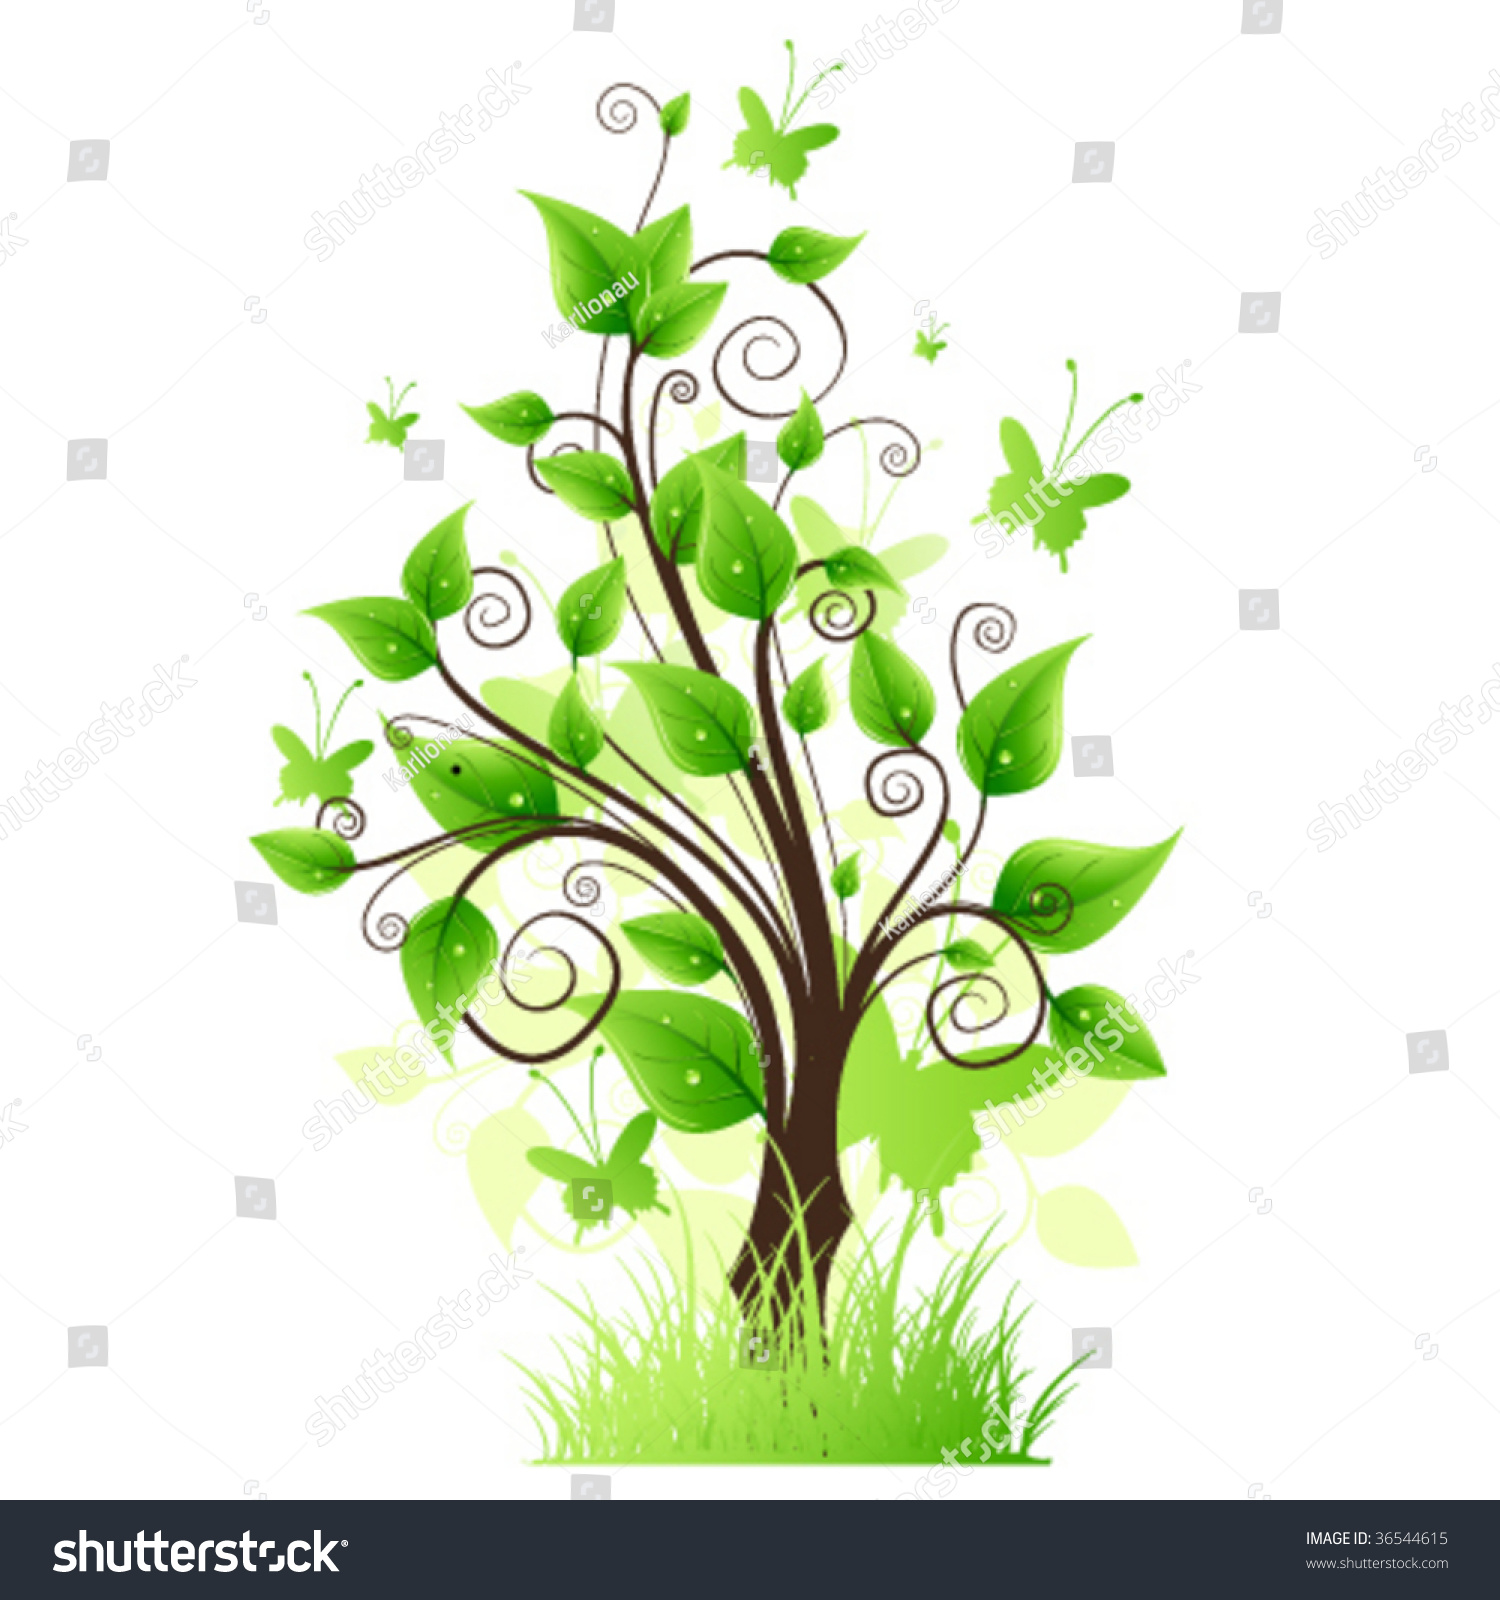 Life Tree Stock Vector Illustration 36544615 : Shutterstock